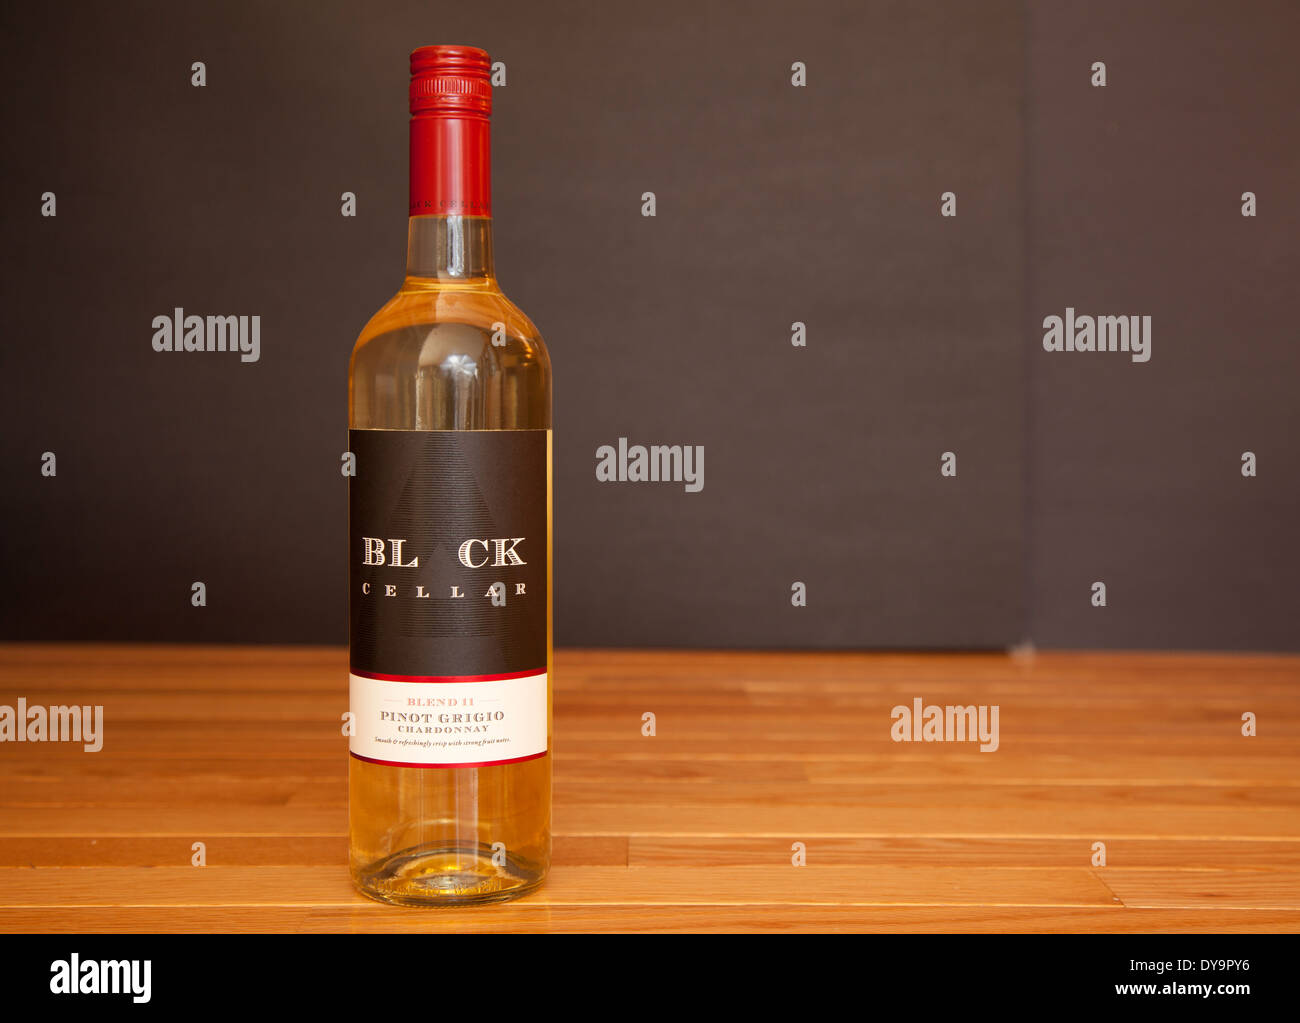 Eine Flasche Pinot Grigio Chardonnay weiß Wein von schwarzen Keller produziert. Stockfoto